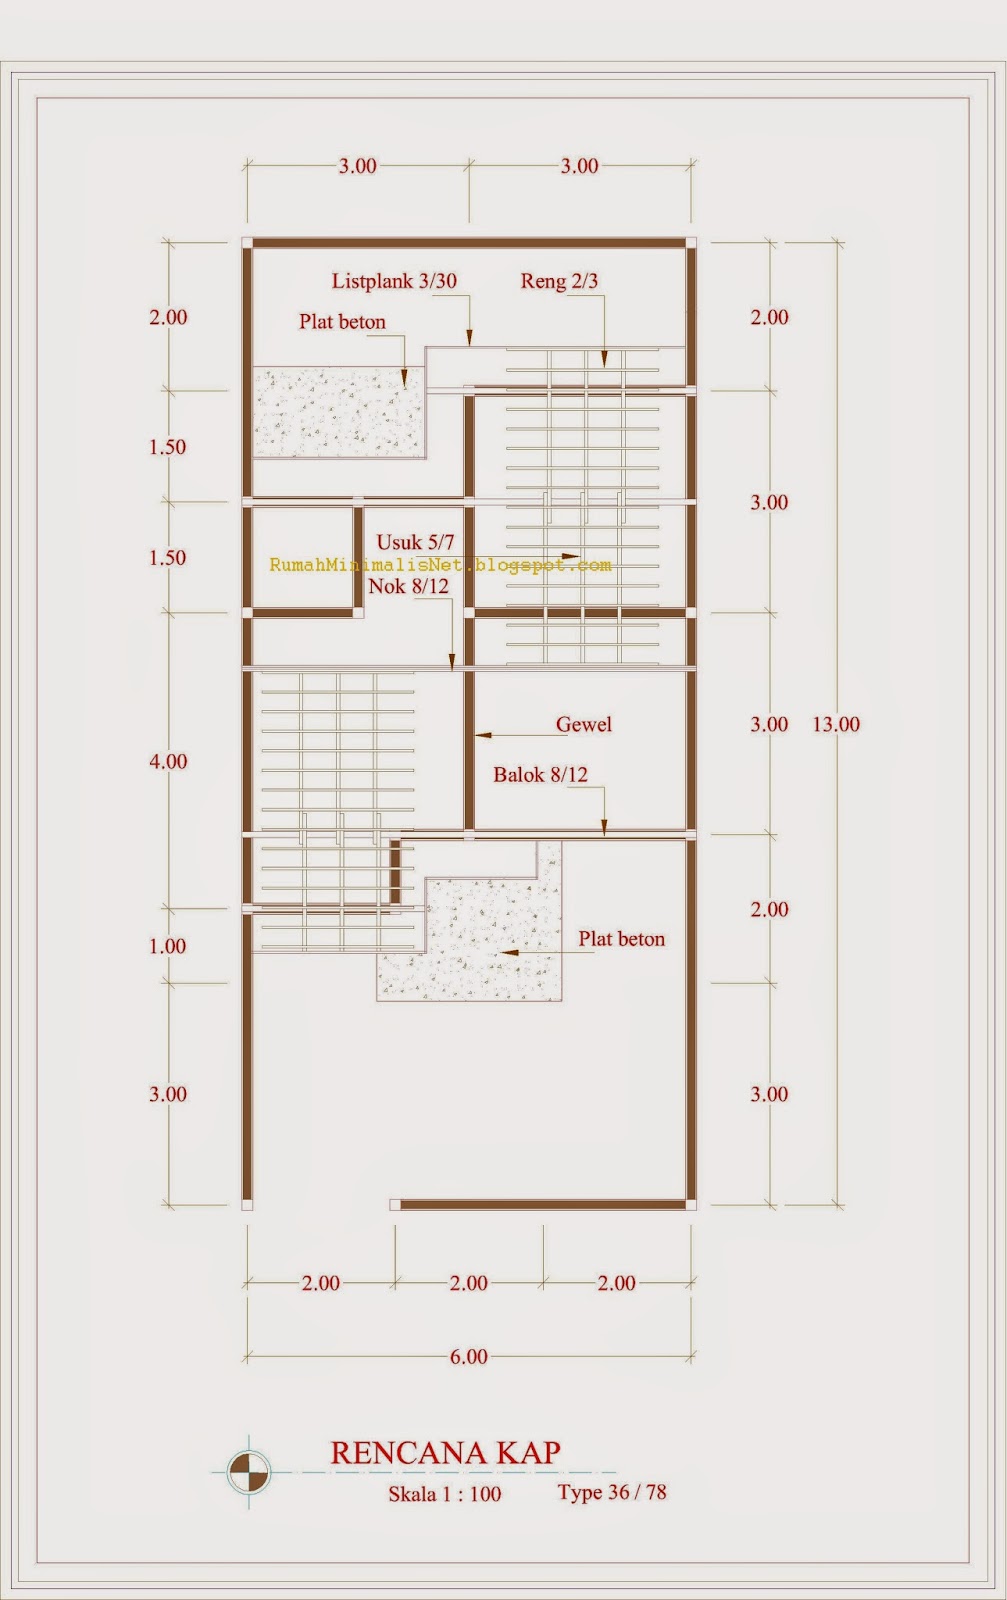 desain rumah minimalis type 36 (rencana kap)